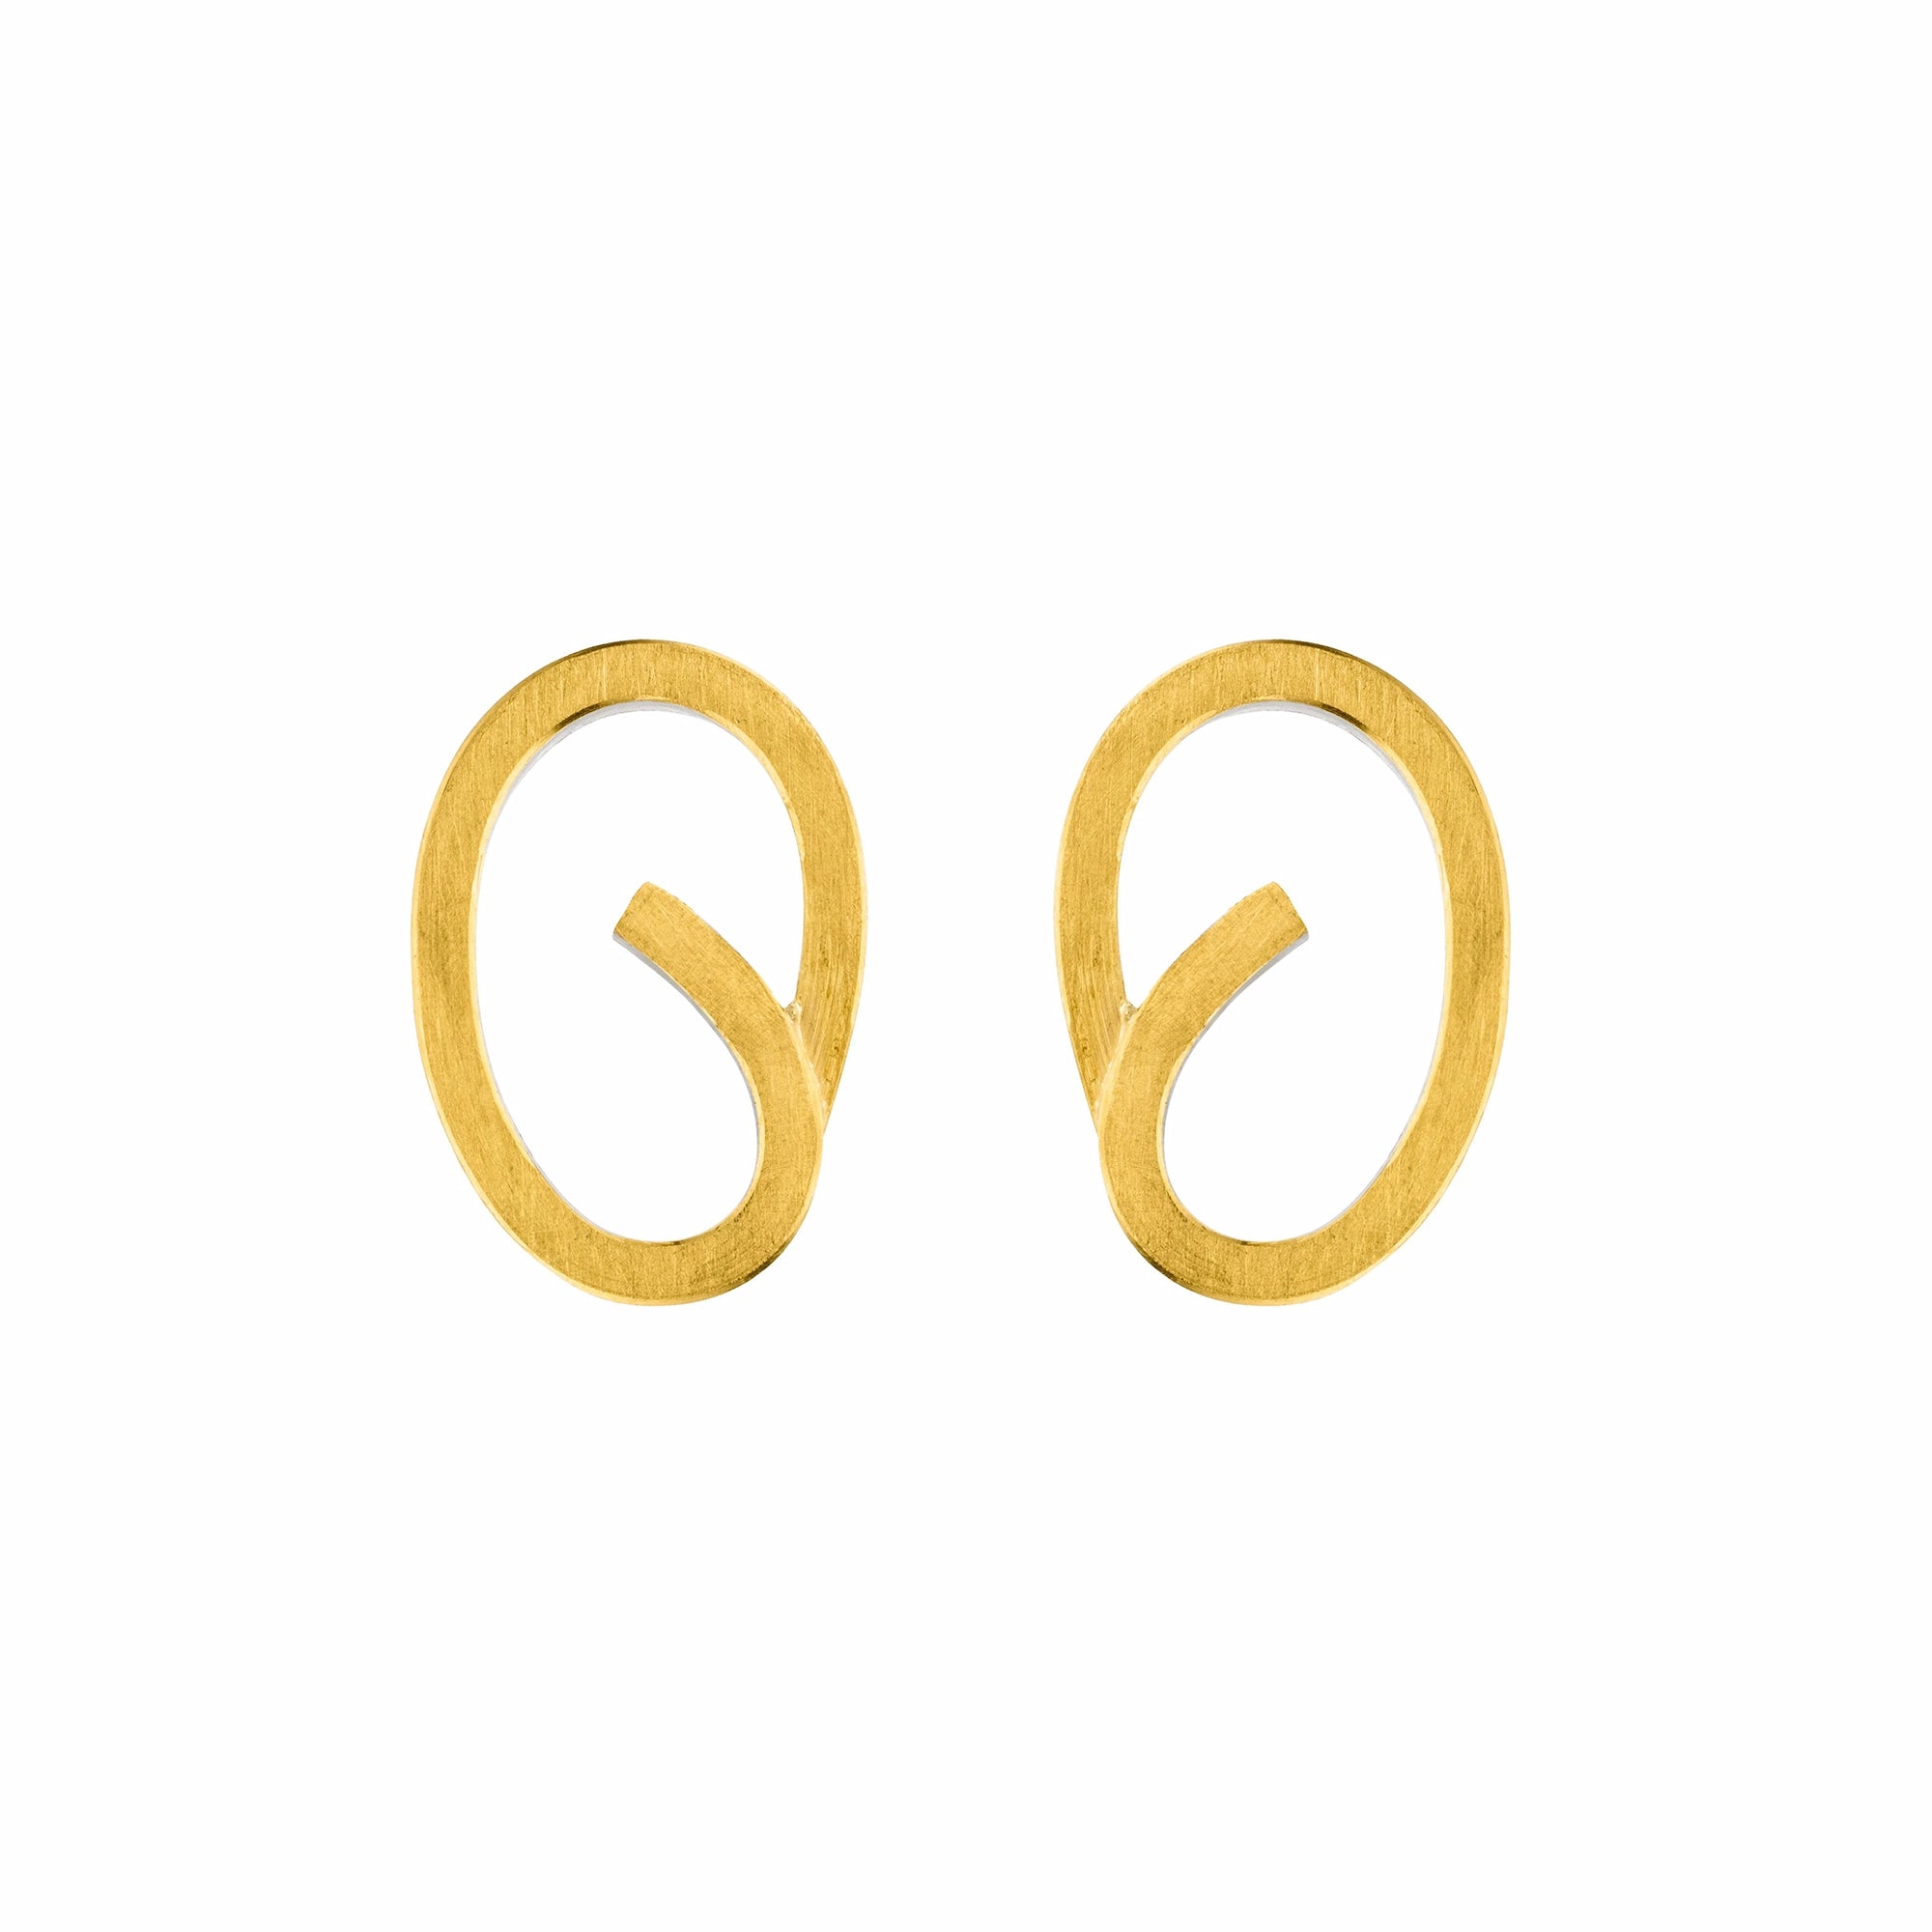 Goldfarbene Ohstecker von Manu Schmuck in einer geschwungenen ovalen Form